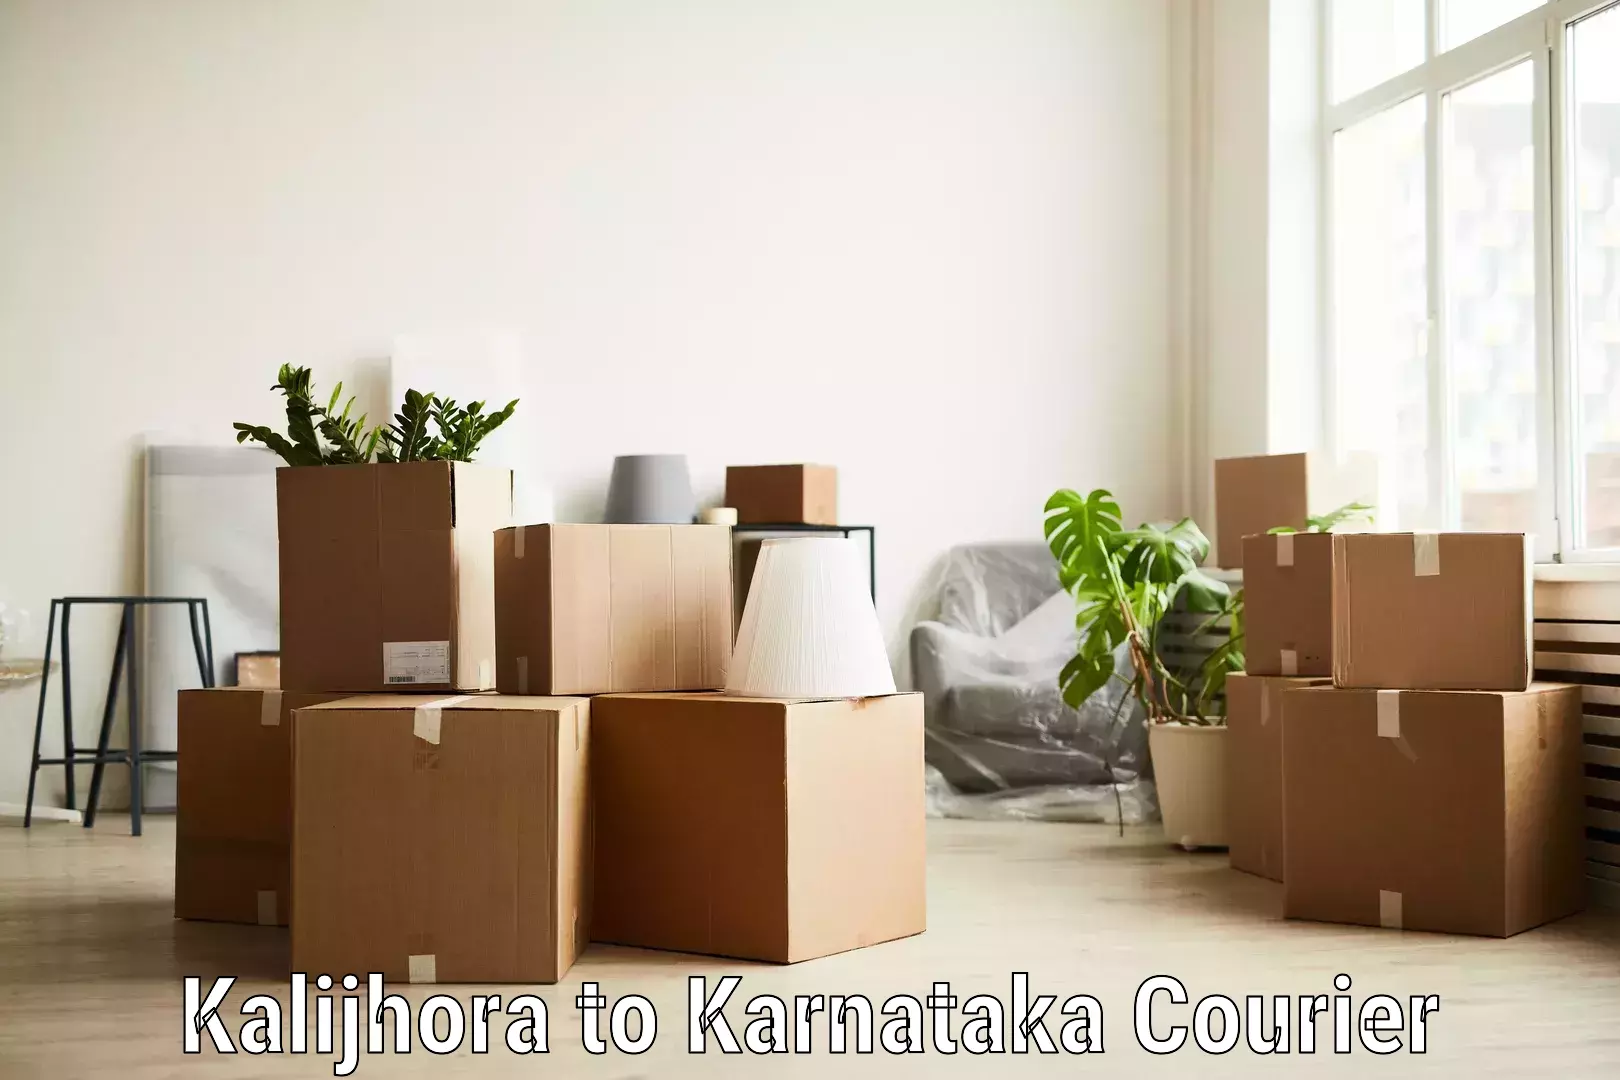 Secure freight services Kalijhora to Karnataka